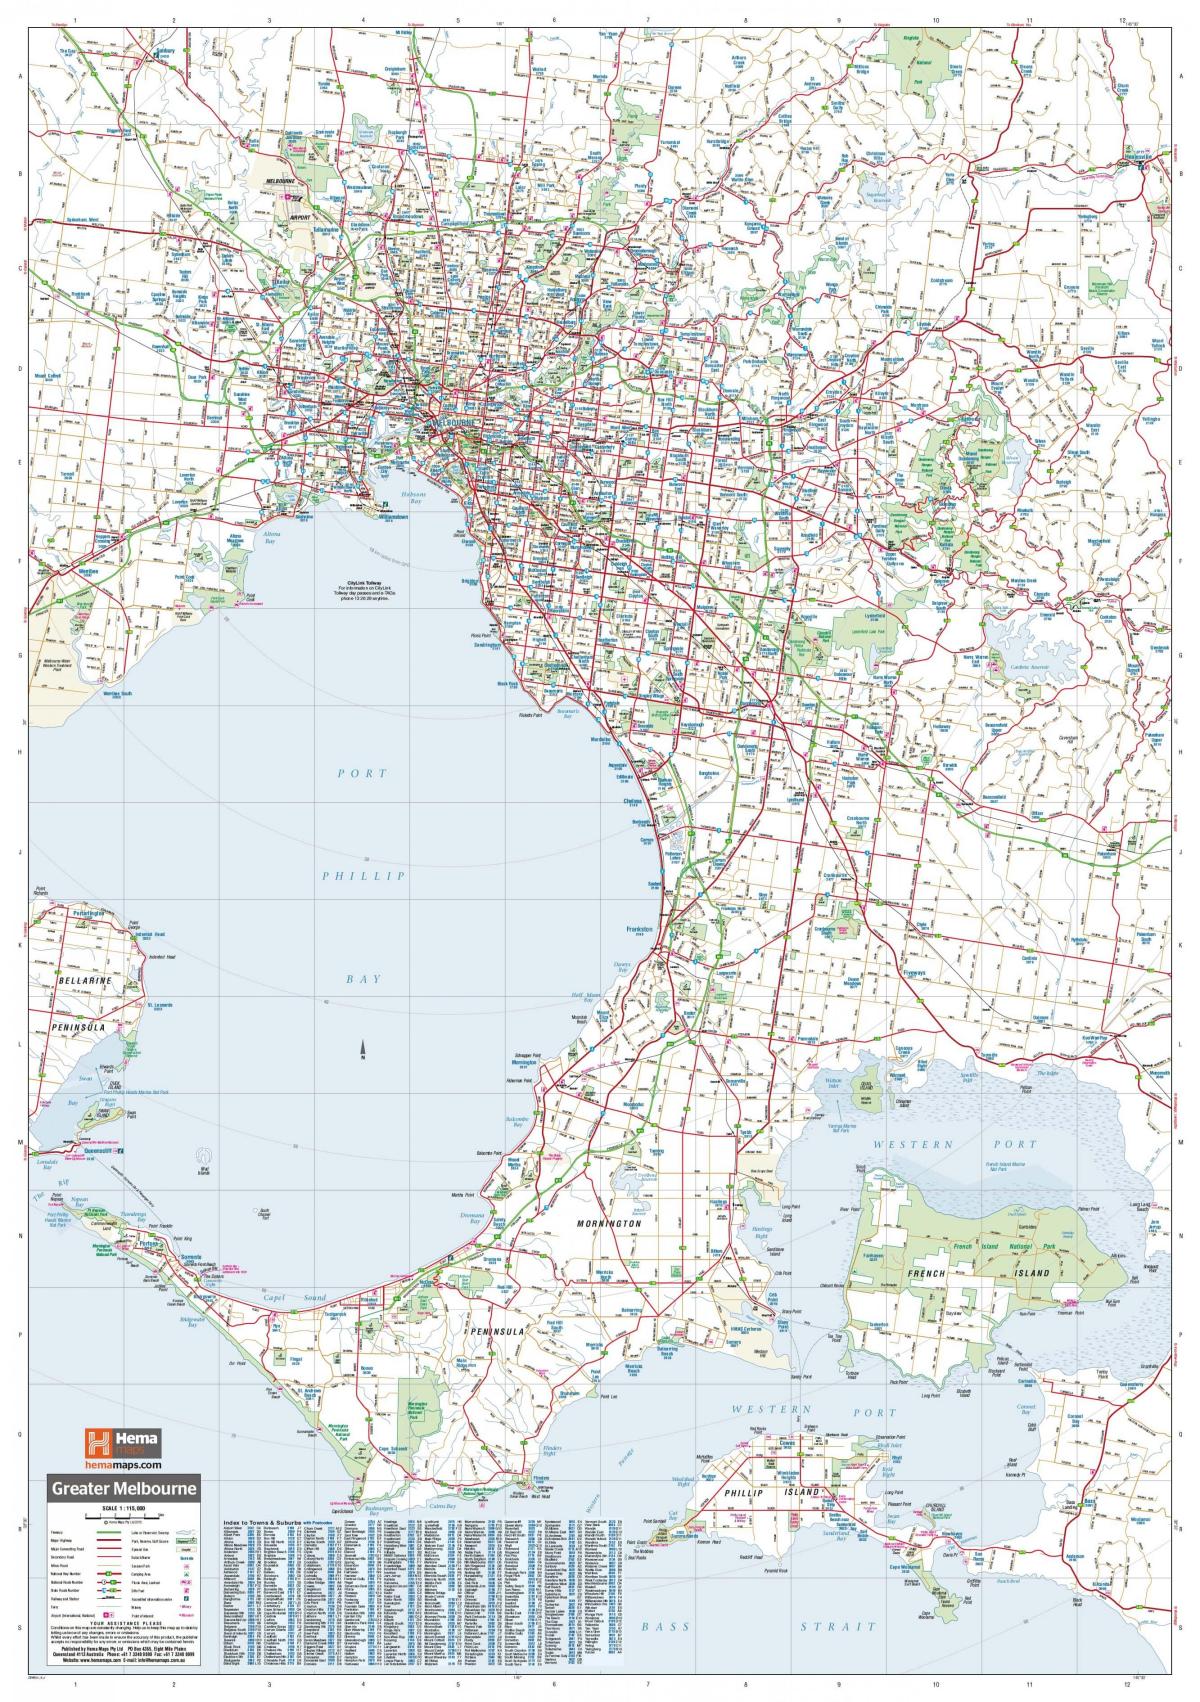 Mapa das ruas de Melbourne